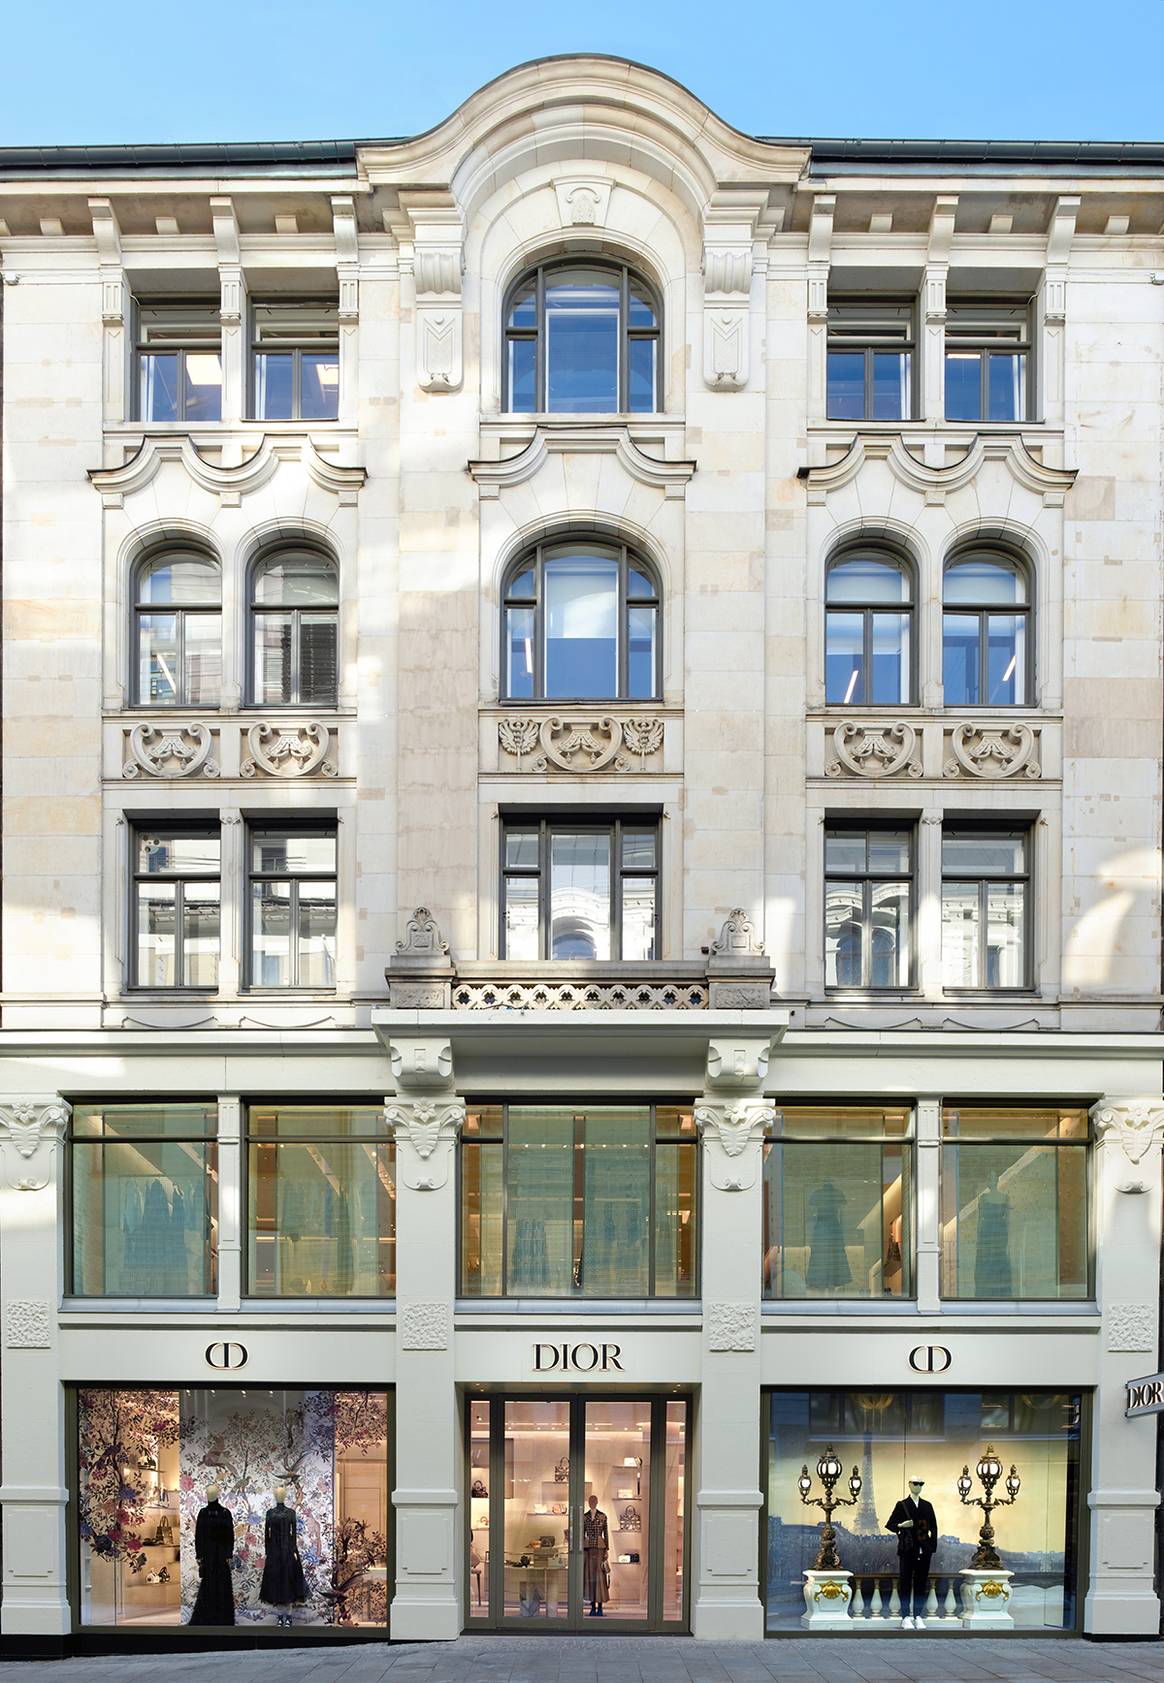 Photo Credits: Nueva boutique de Dior en Oslo, Noruega. Fotografía de cortesía.